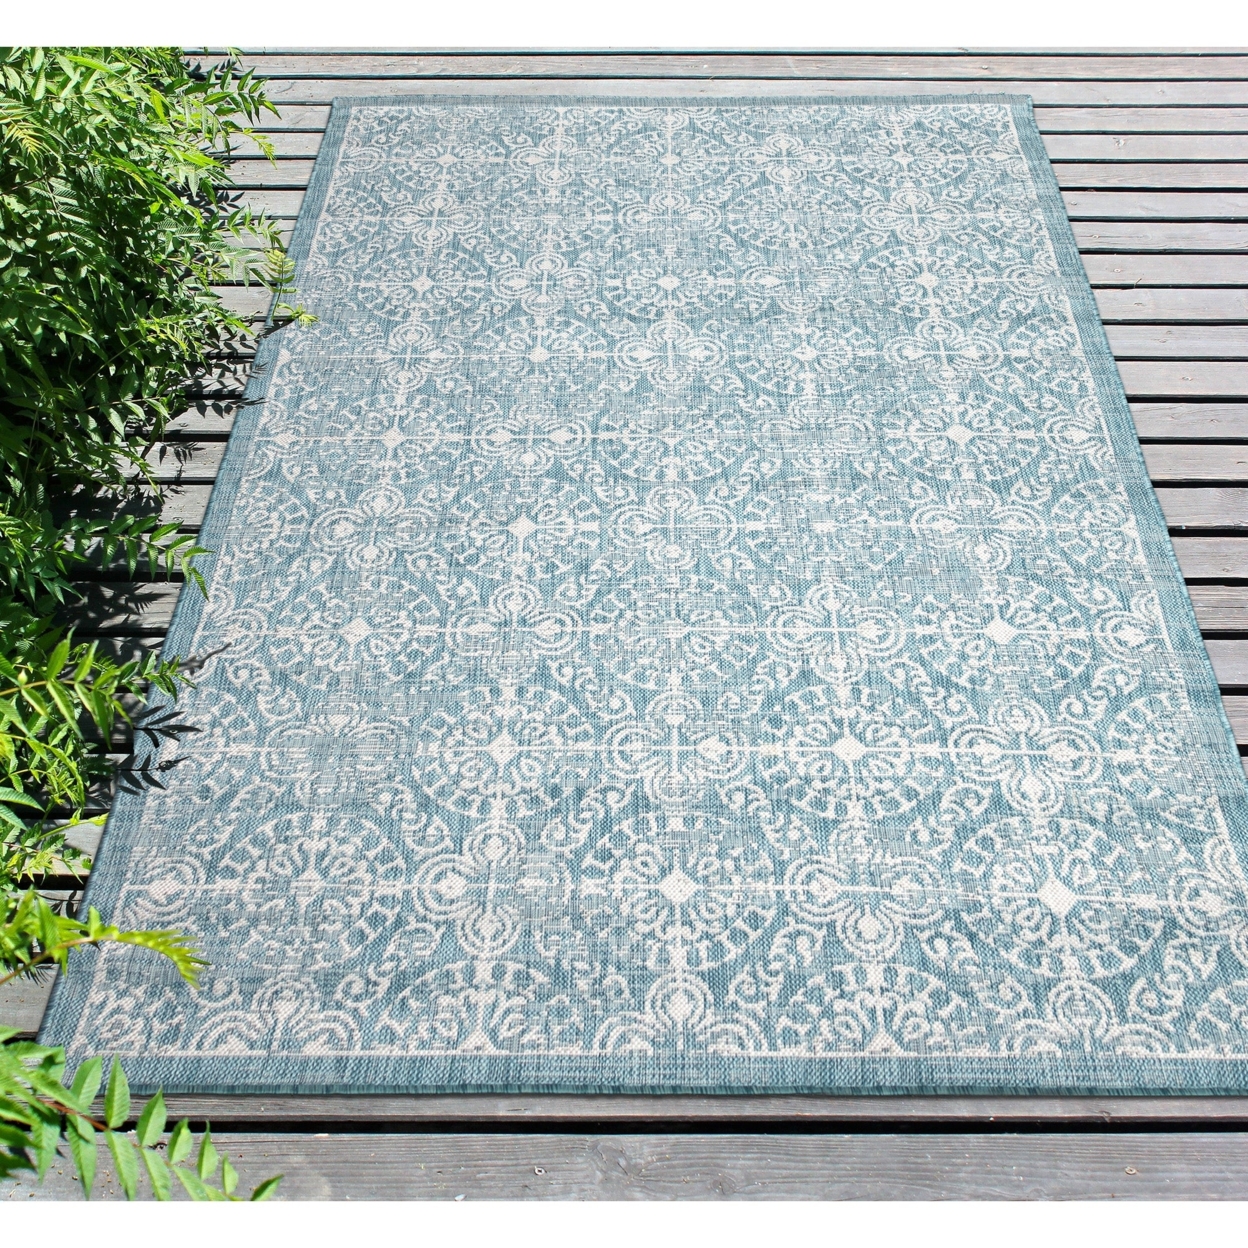 Liora Manne Carmel Antique Tile Indoor Outdoor Area Rug Aqua - 7'10 X 9'10